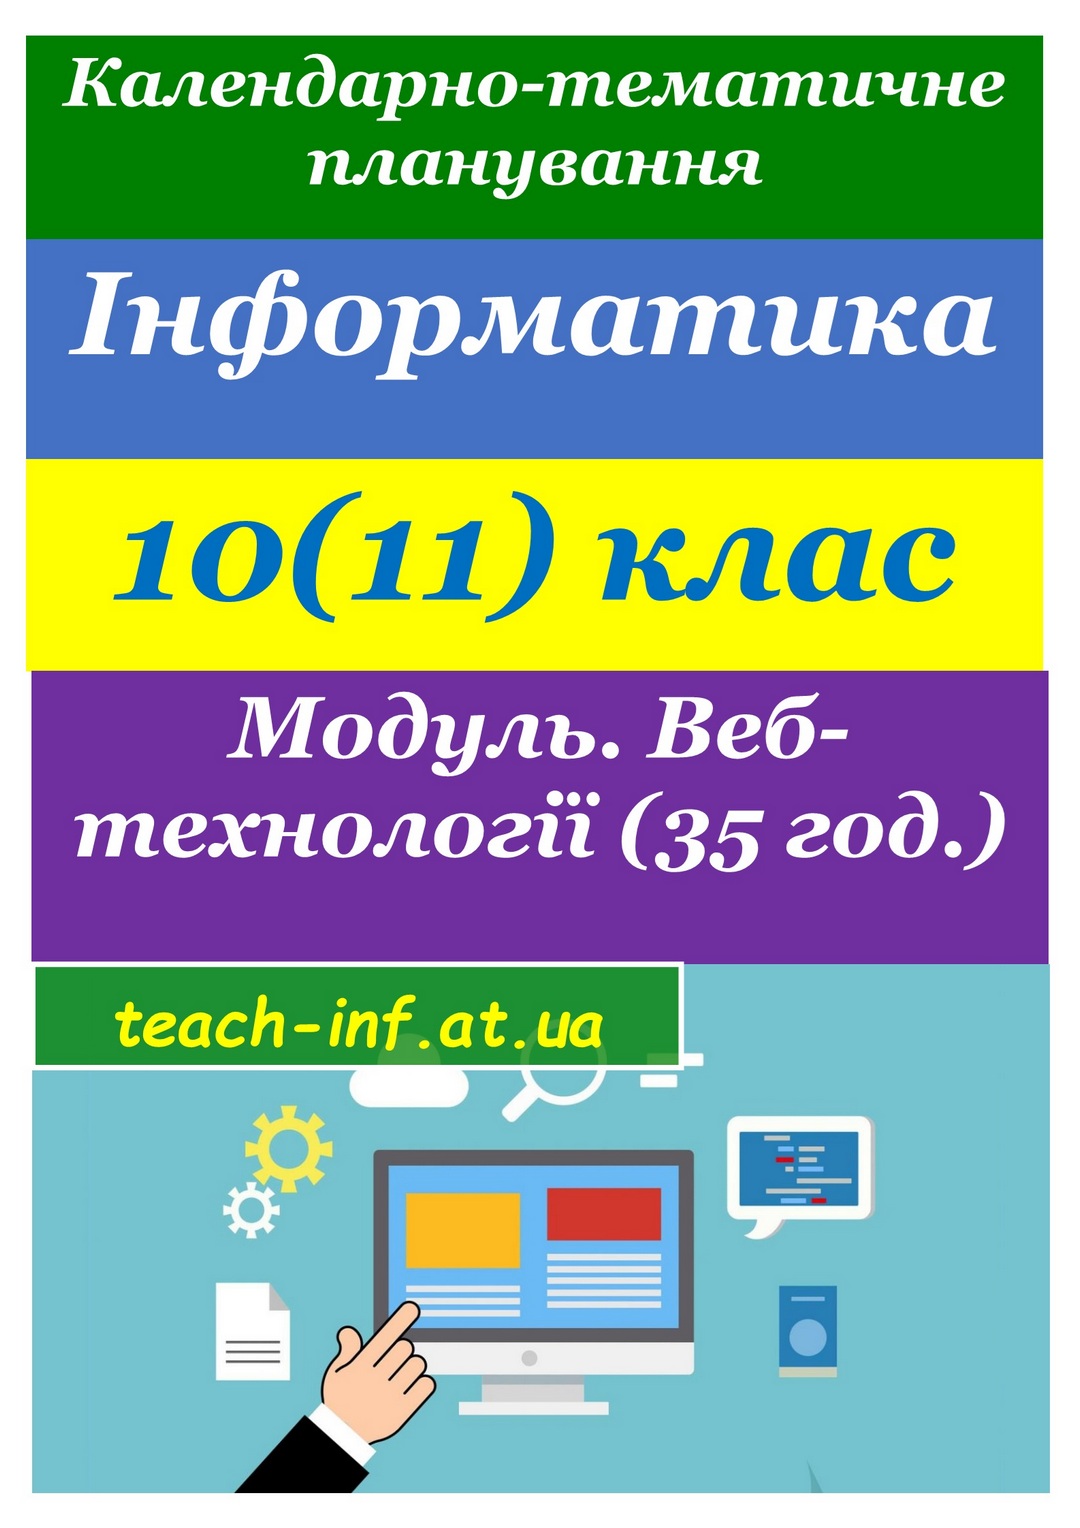 Календарно-тематичне планування. Інформатика 10(11) клас 2019. Веб-технології